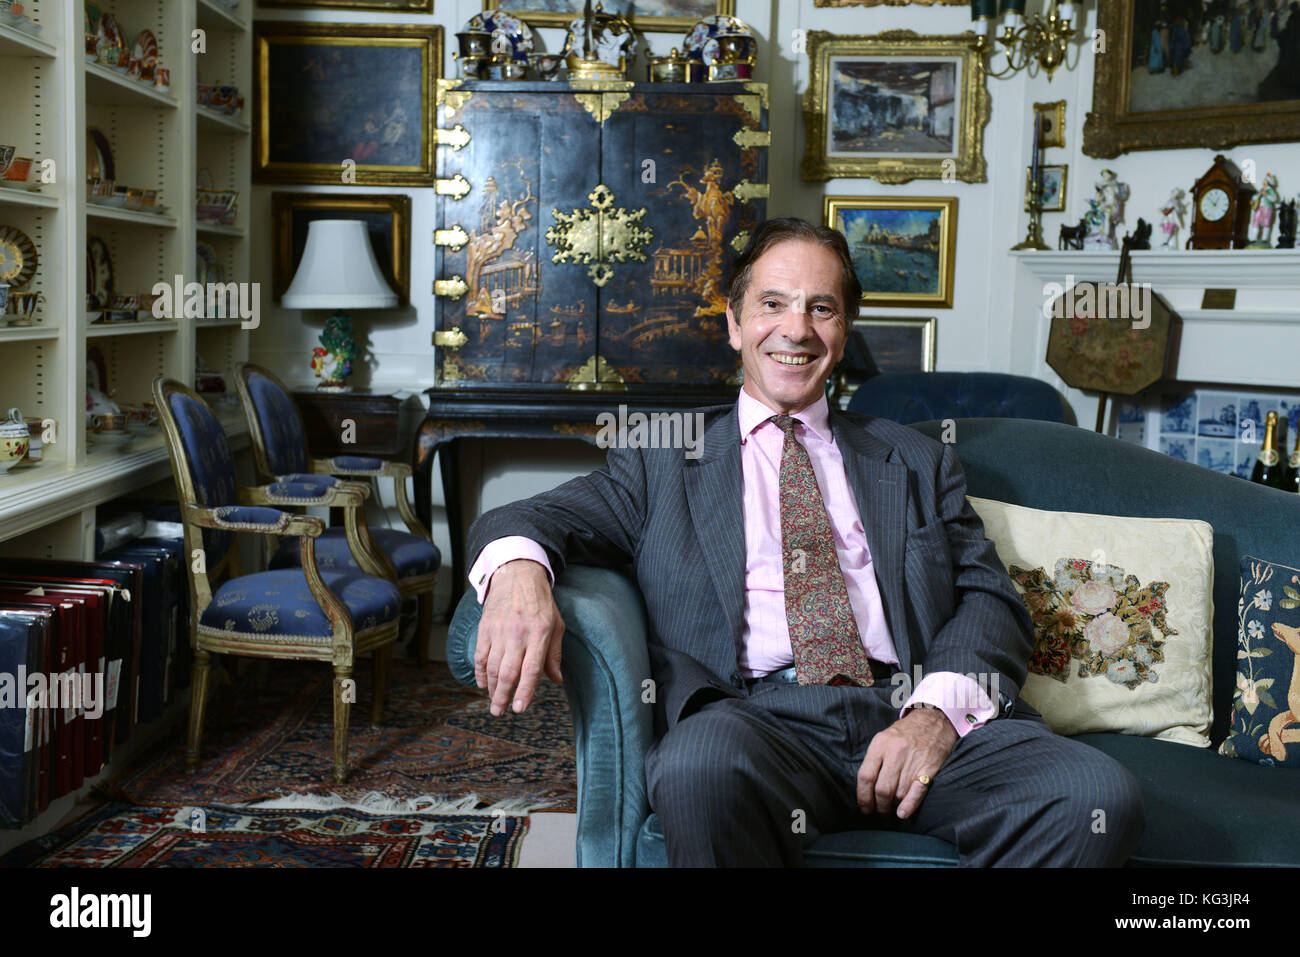 Vuelo de lord Howard, un político conservador y un miembro de la Cámara de los Lores fotografiado en su casa en el centro de Londres. Foto de la troika Foto de stock